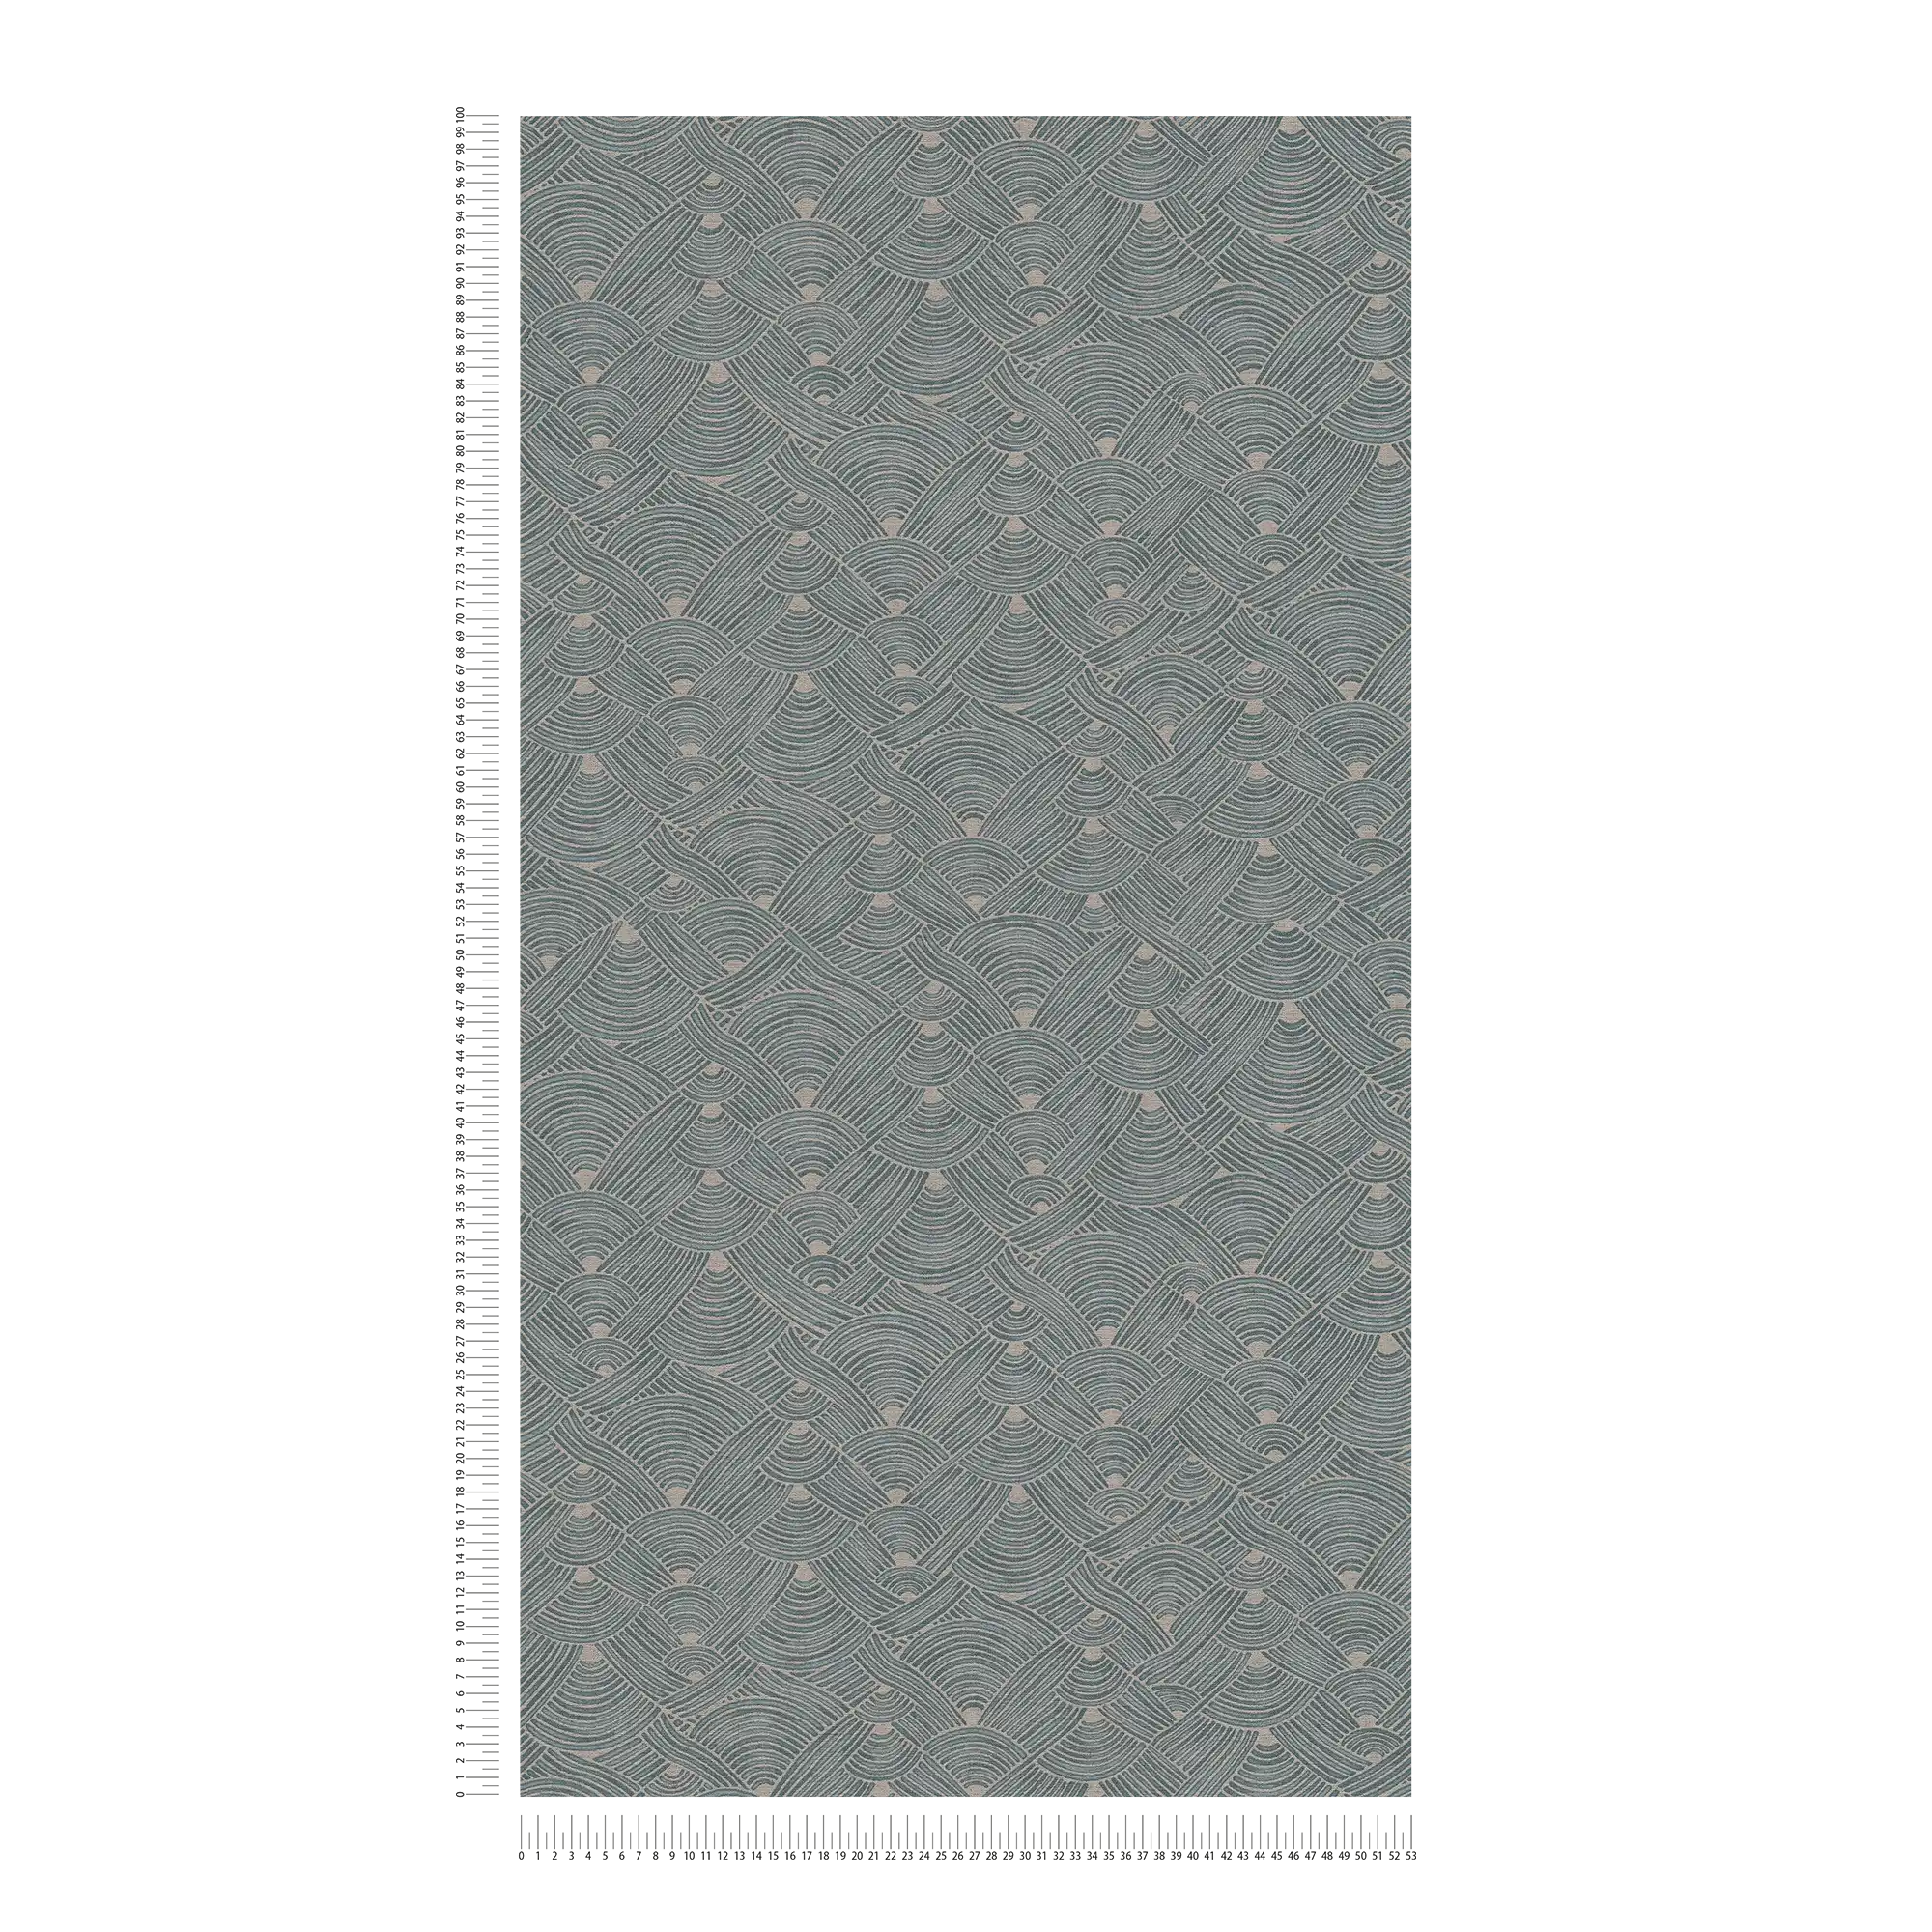             Vliesbehang ethno design met mand look - blauw, grijs, beige
        